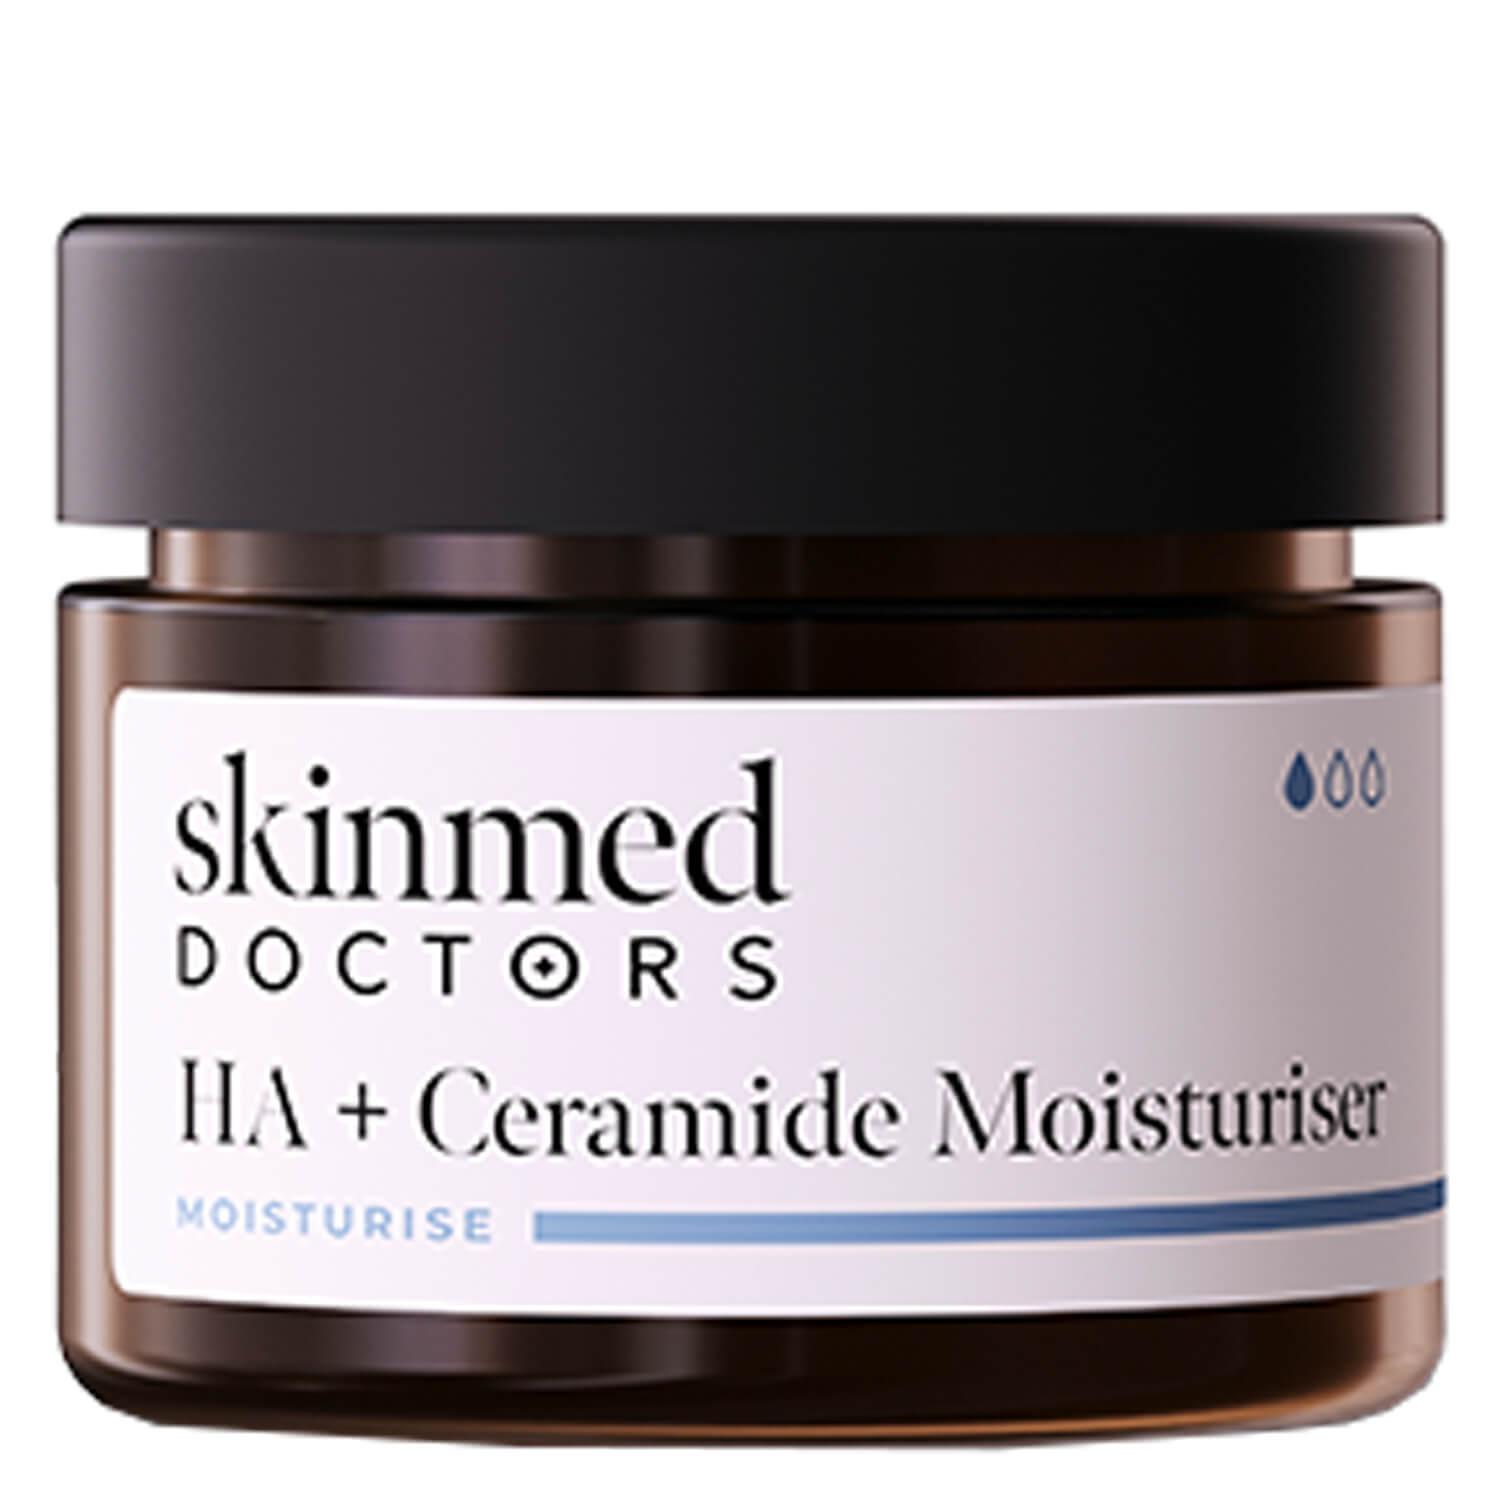 skinmed Doctors - HA+ Ceramide Moisturiser